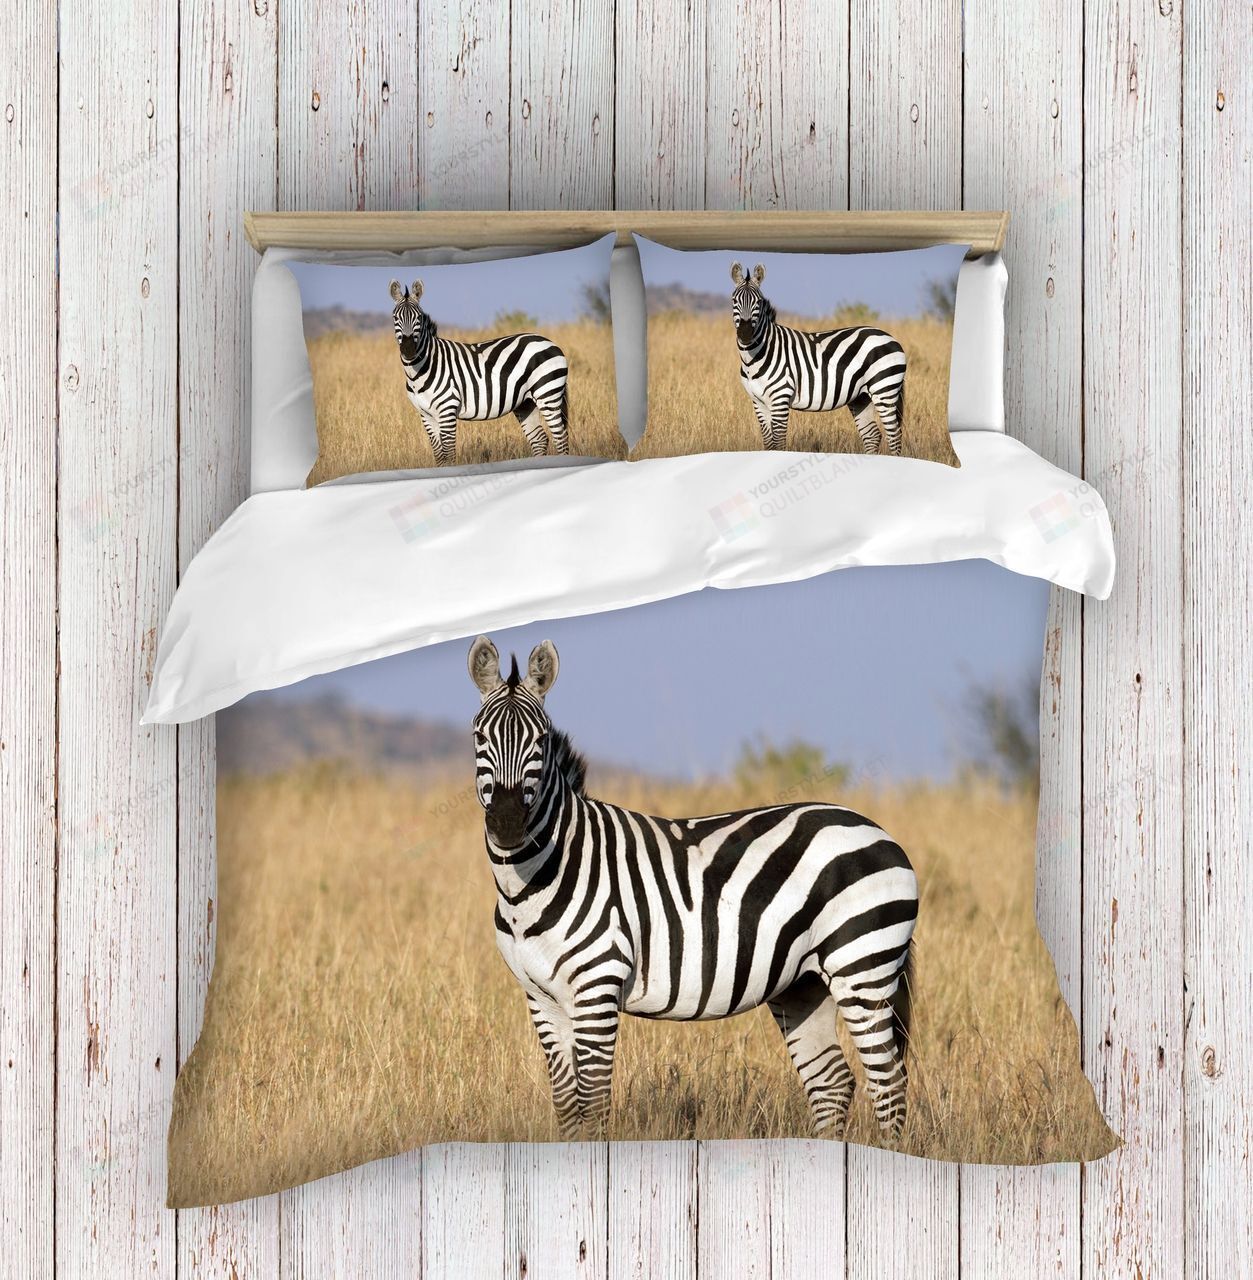 Zebra Bedding Set Bed Sheets Spread Comforter Duvet Cover Bedding Sets